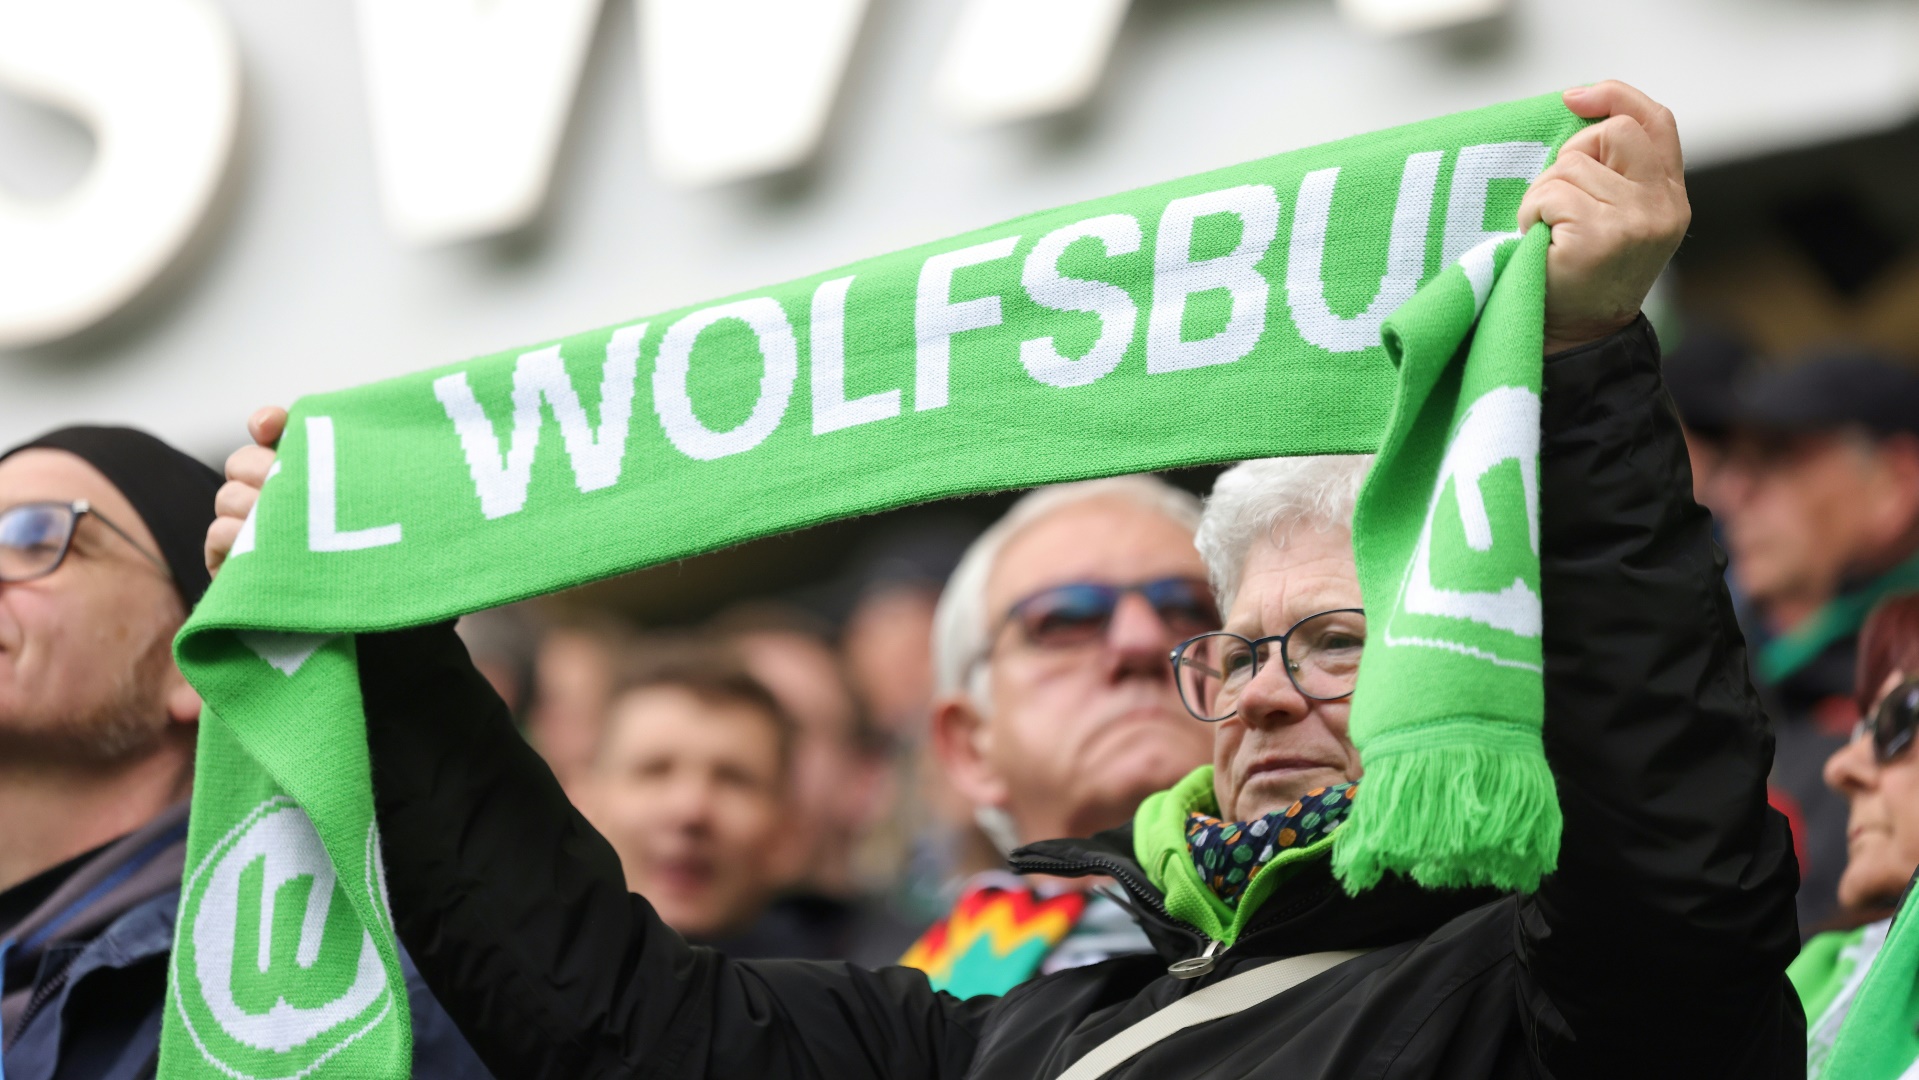 Umfrage: Wolfsburg mit den besten Nachhaltigkeitsaktivitäten